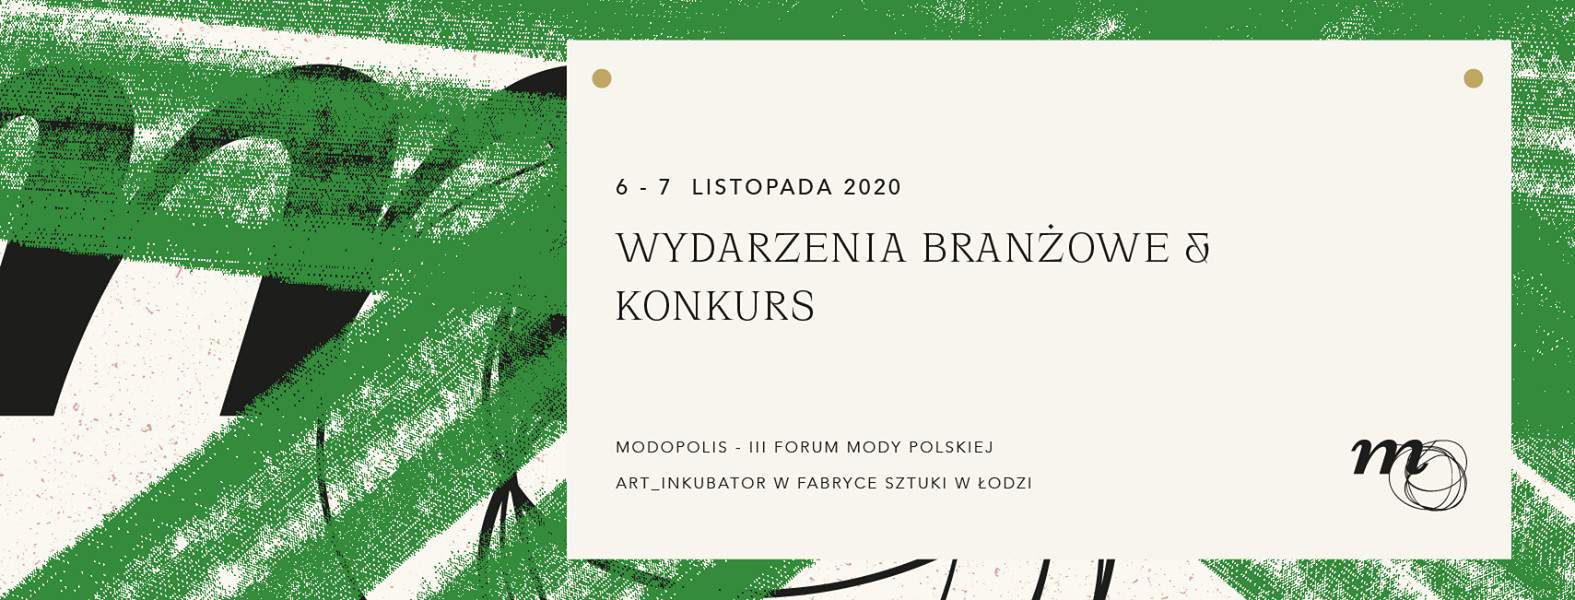 Modopolis – III Forum Mody Polskiej – konkurs dla projektantów i producentów mody!